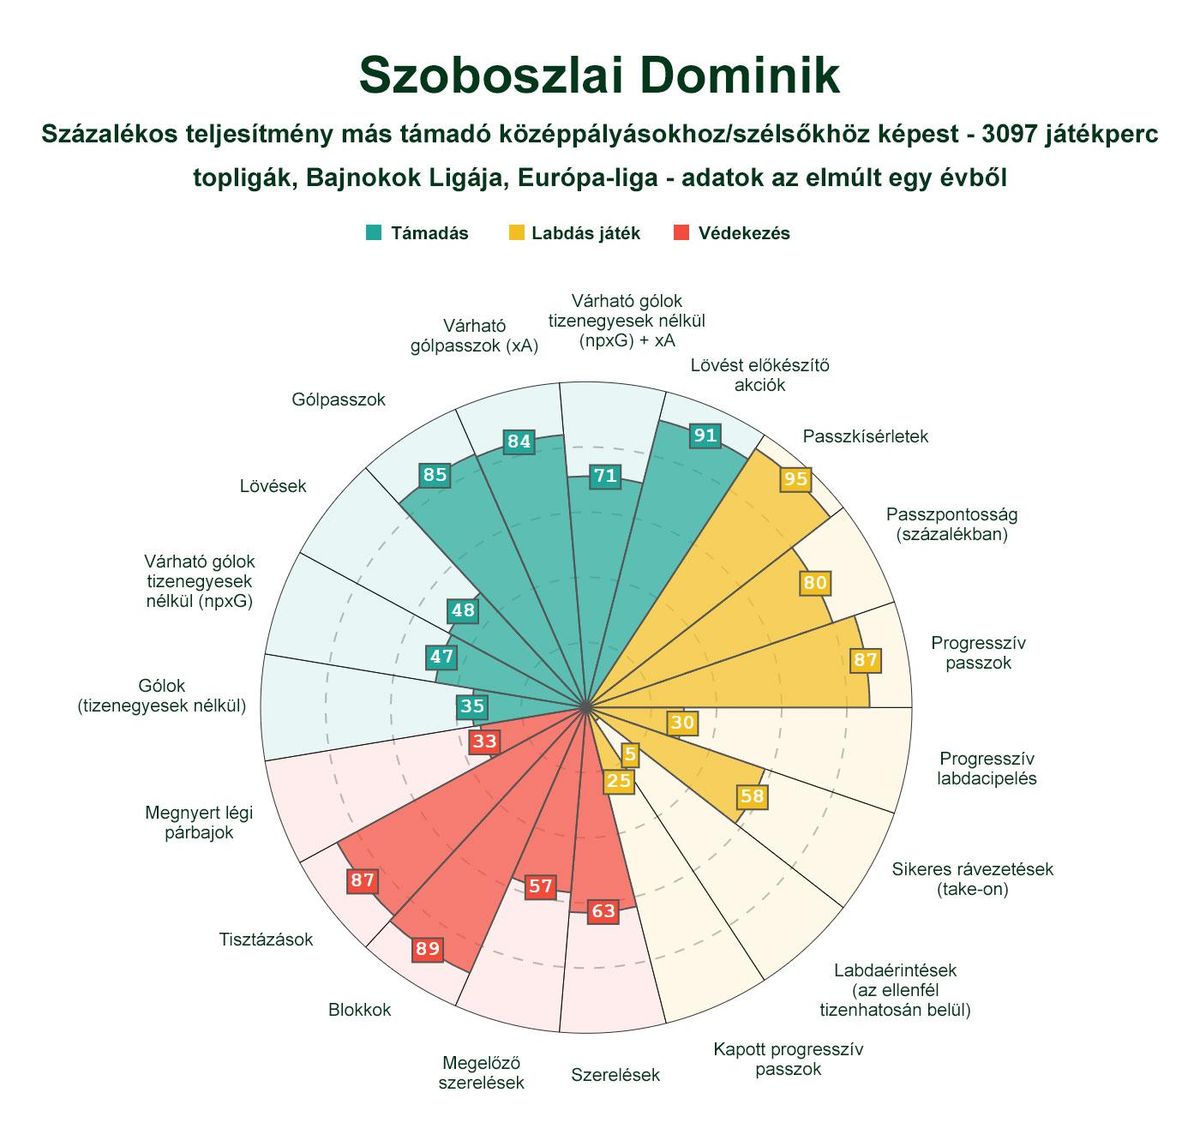 Így teljesít Szoboszlai a posztján játszókhoz képest (Grafika és adatok forrása: fbref.com)